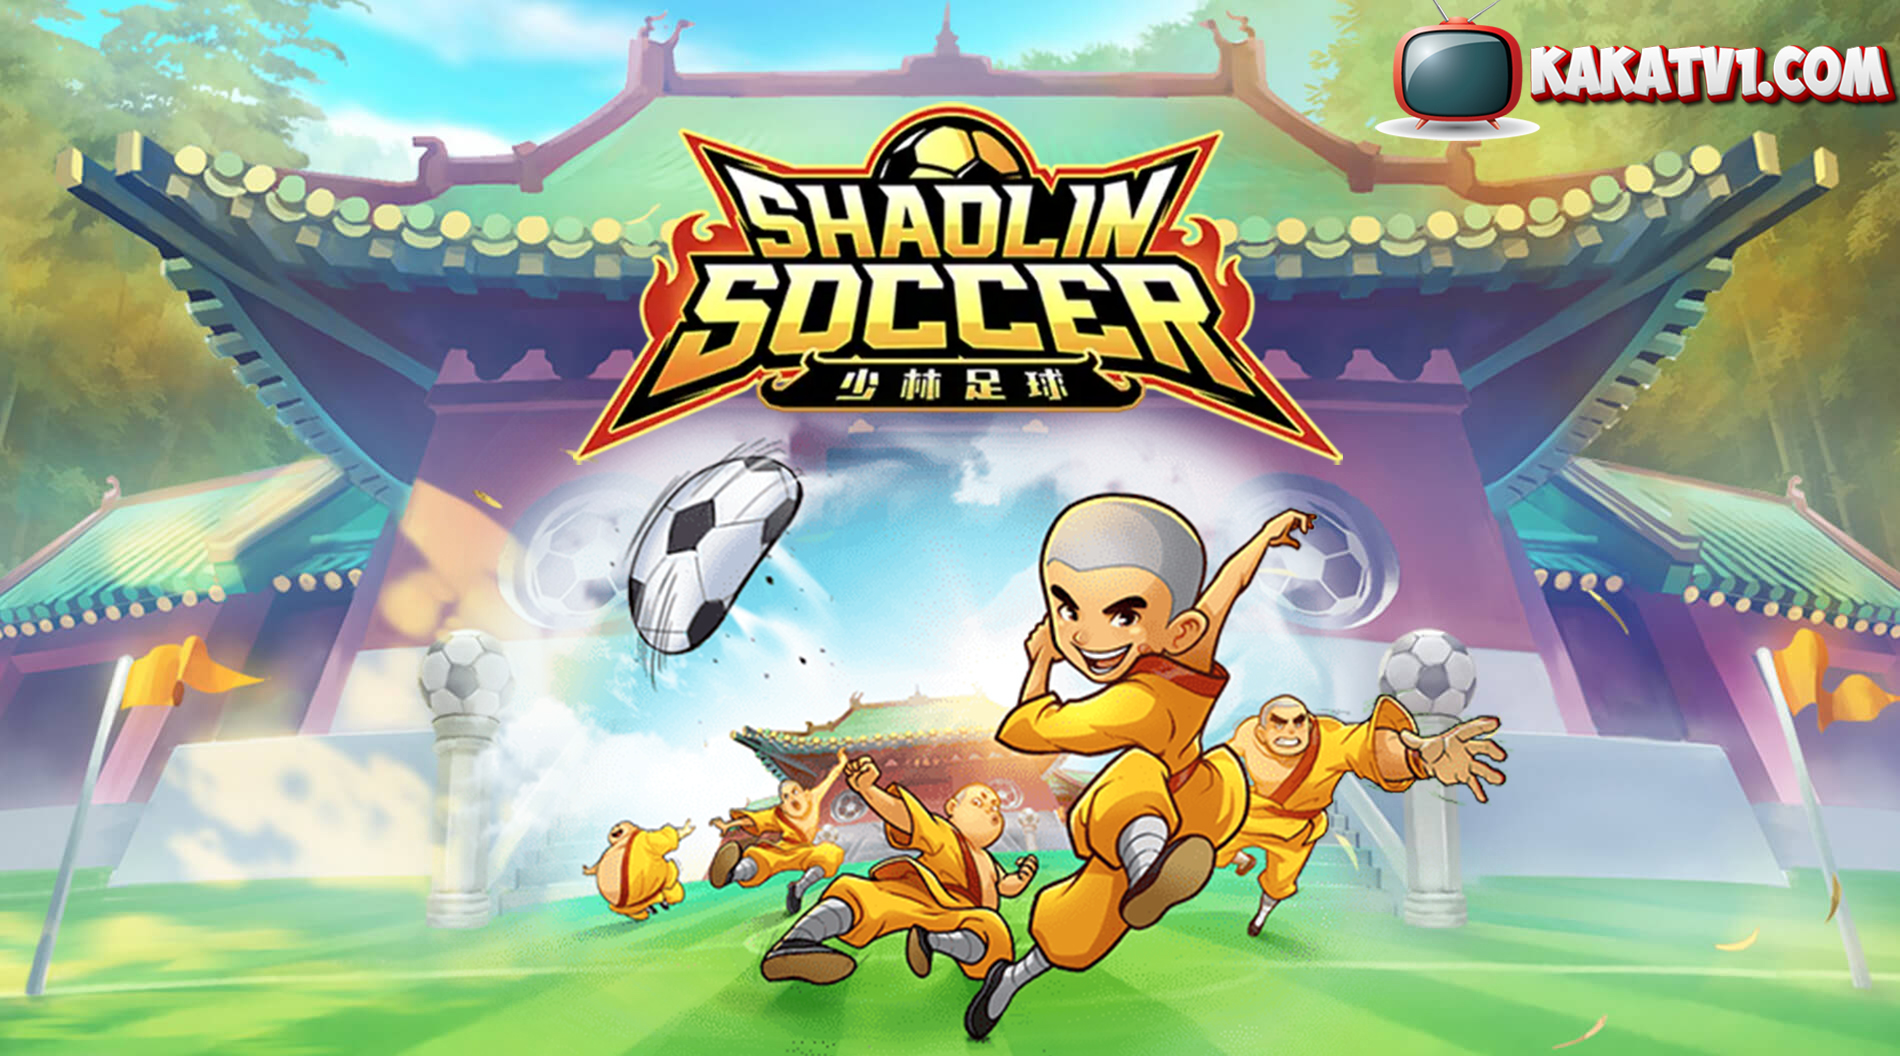 Shaoline Soccer PgSoft